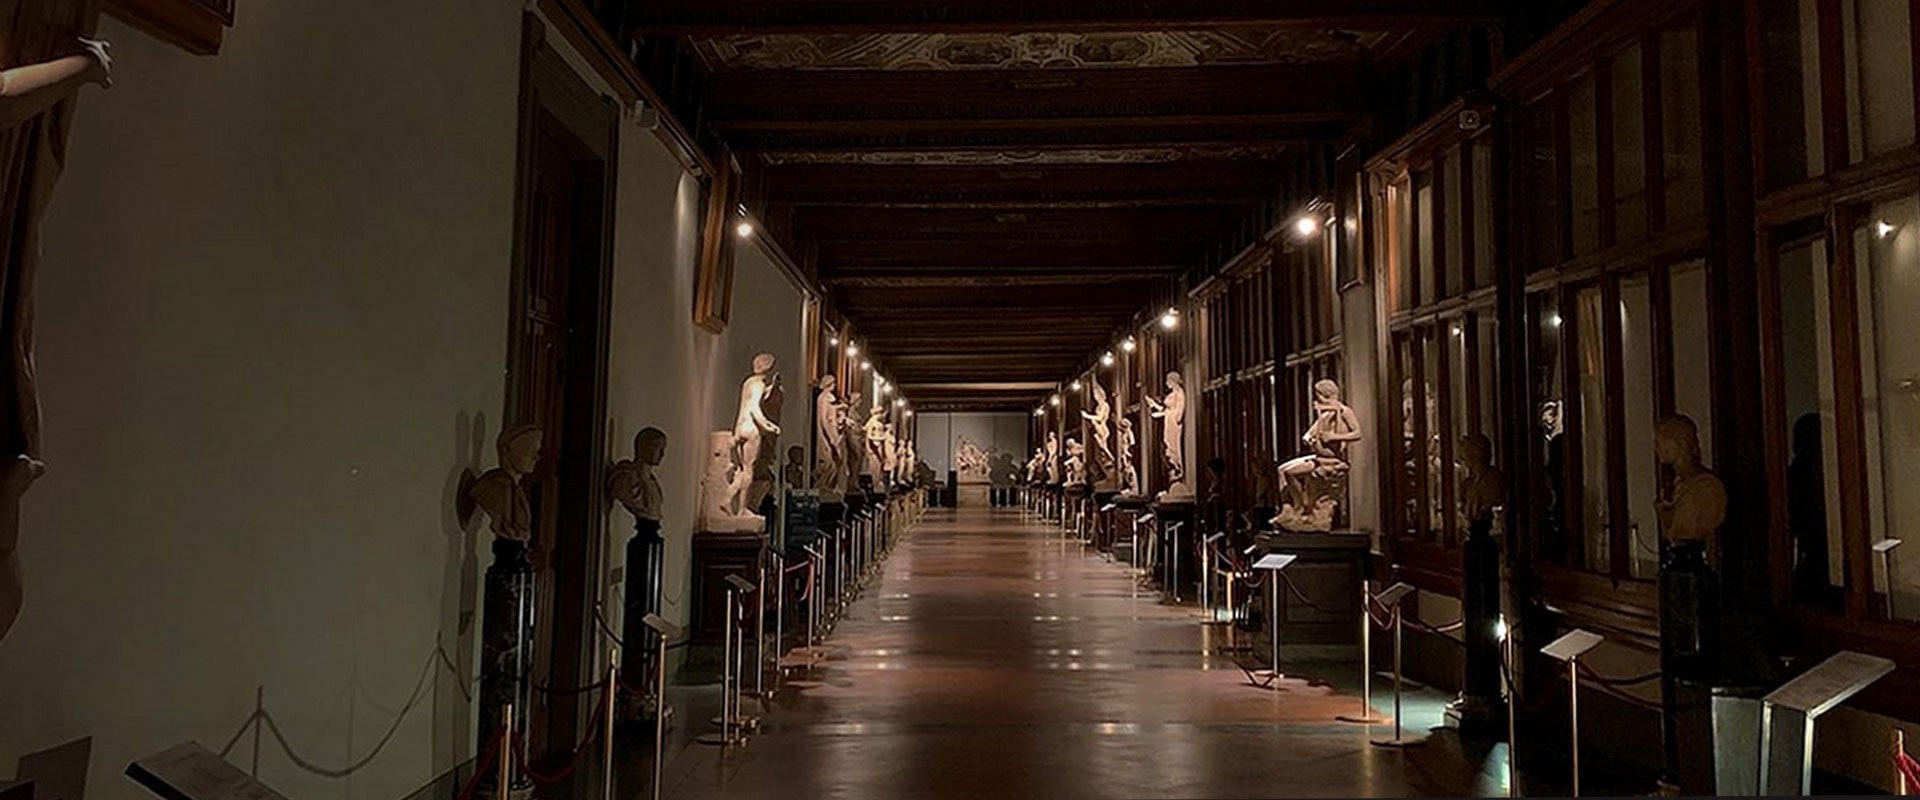 Uffizi aperti by night!